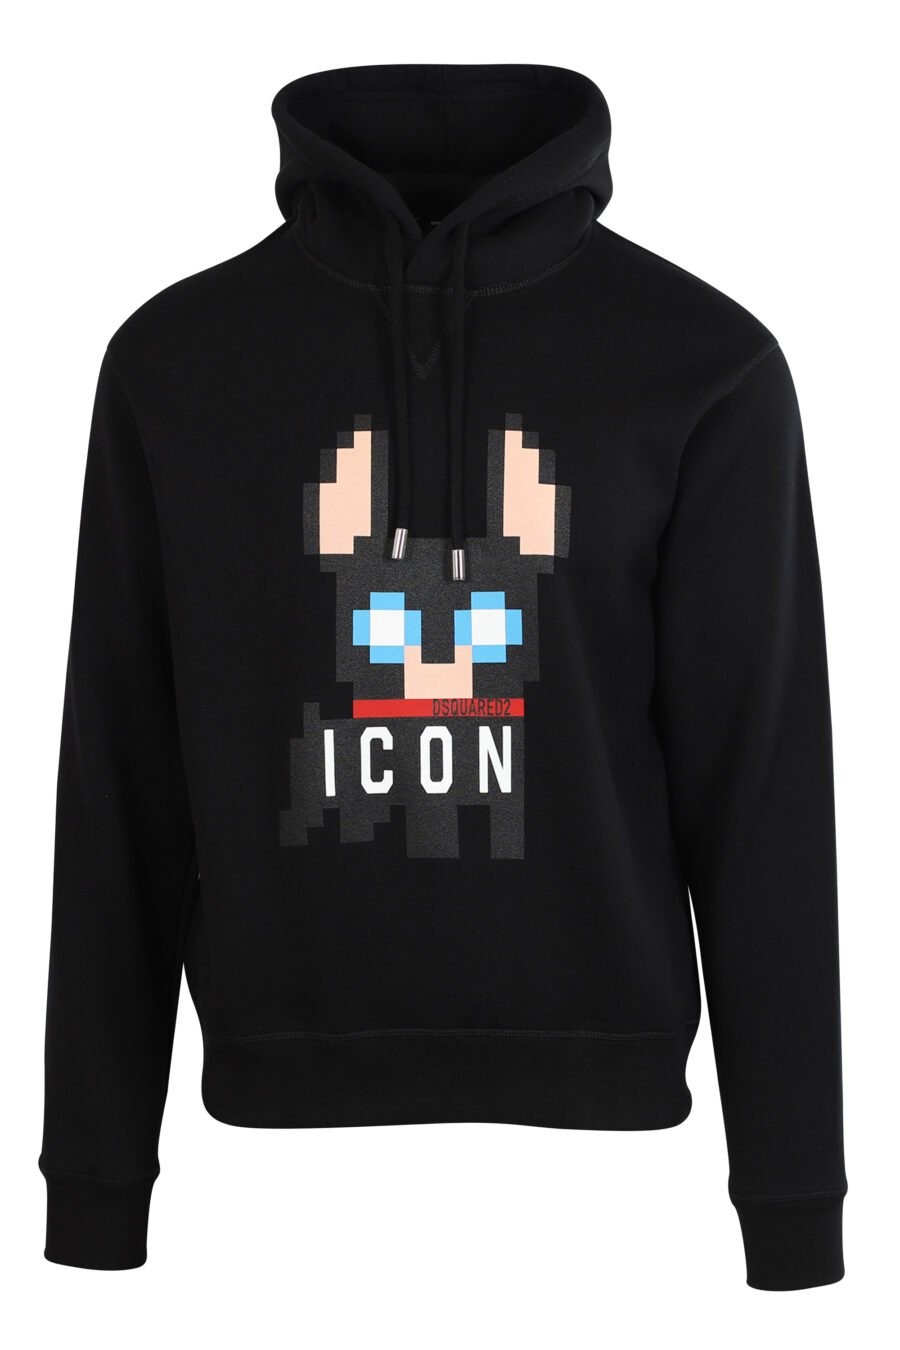 Black hooded sweatshirt with "pixeled" dog logo - 8054148006716